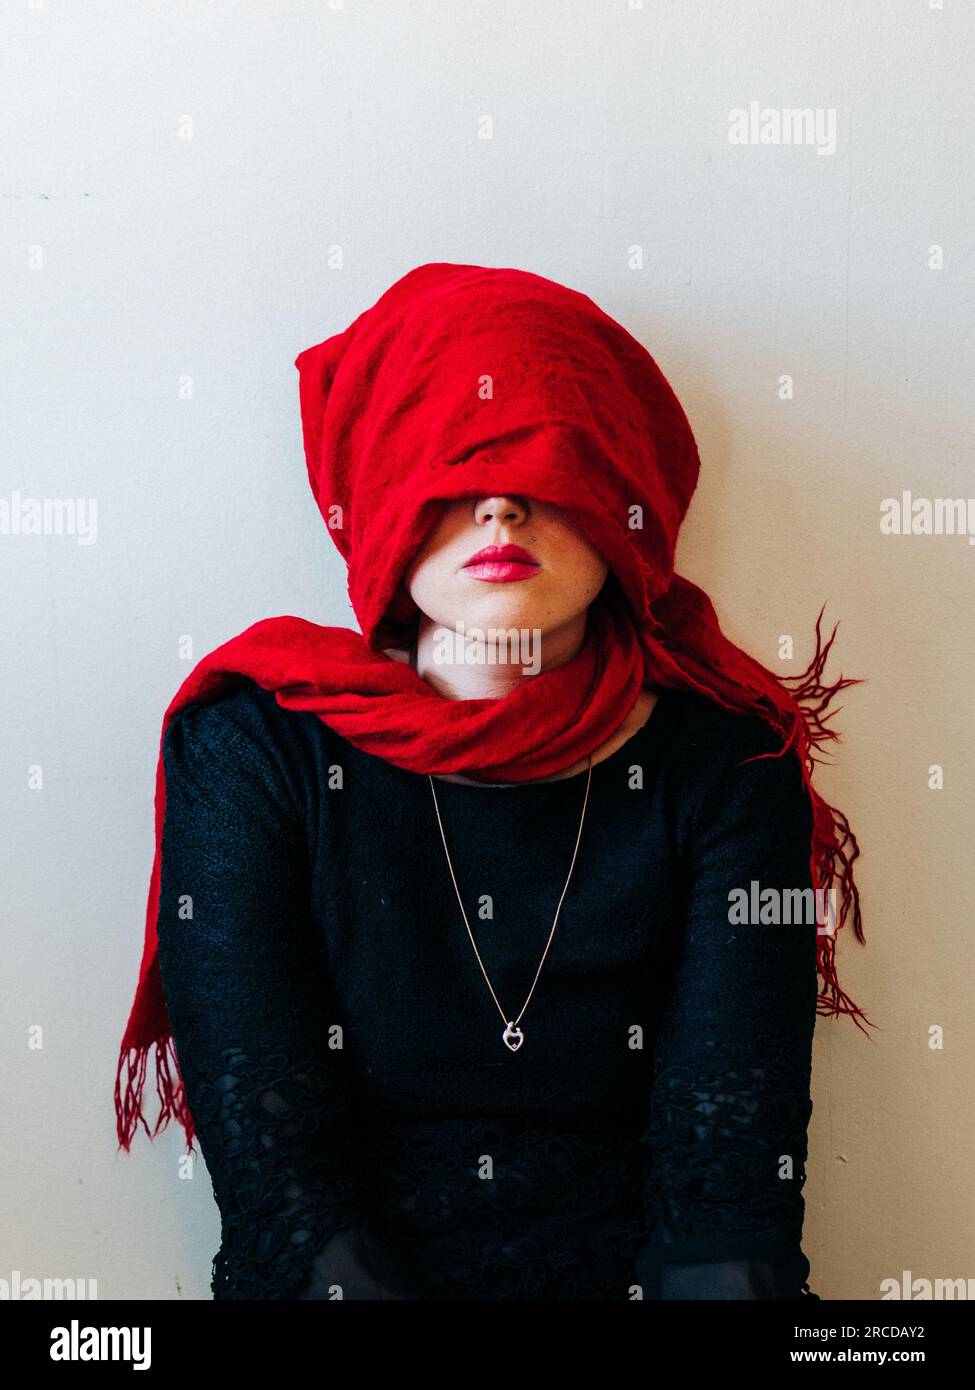 Sciarpa rossa sulla testa della giovane donna Foto Stock